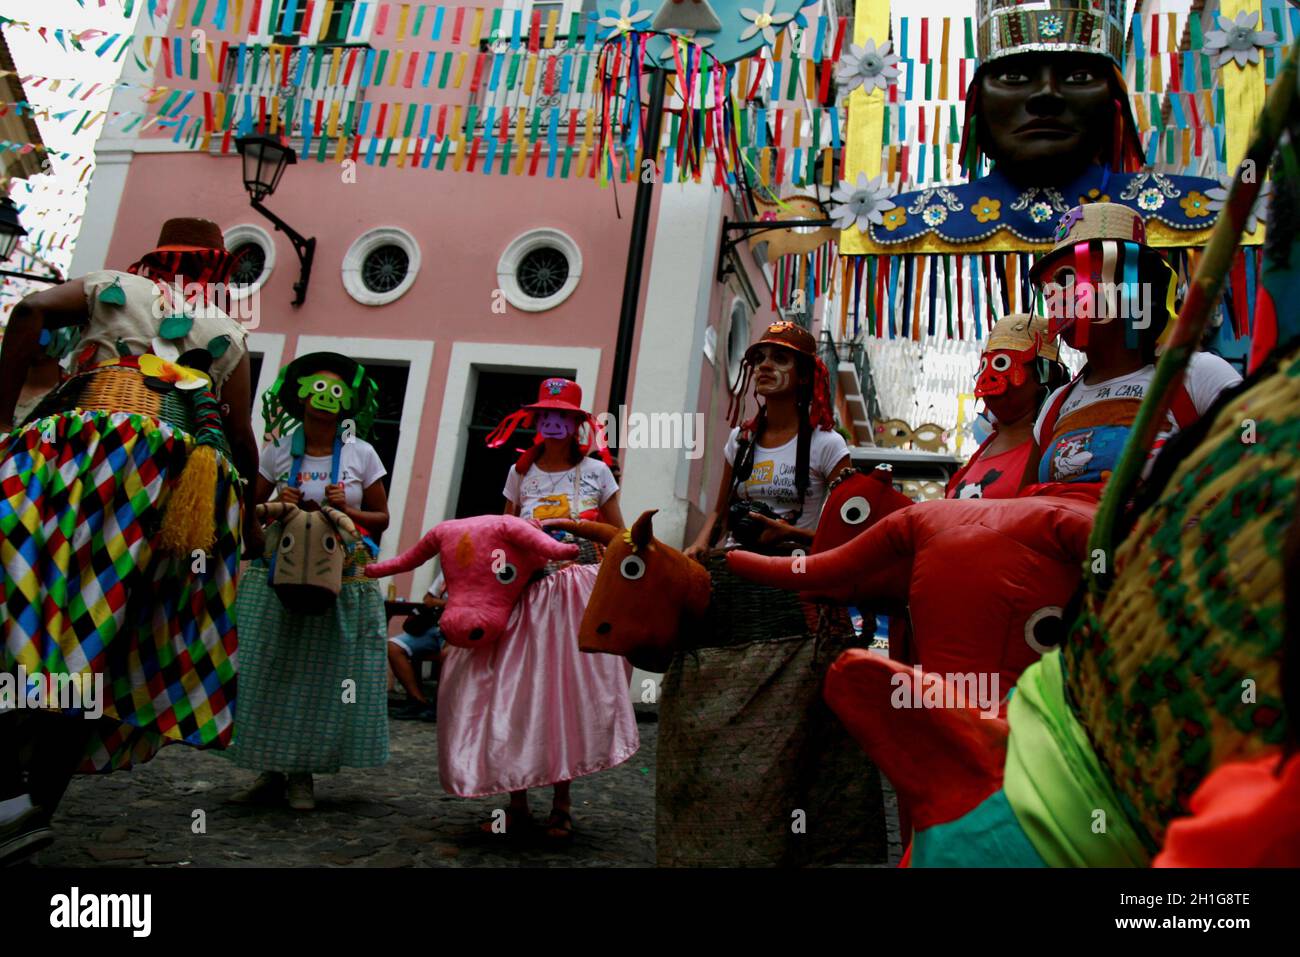 salvador, bahía / brasil - 13 de febrero de 2015: Manifestación cultural y foclorica bumba meu boi se ve durante la presentación en Pelourinho, durante Foto de stock